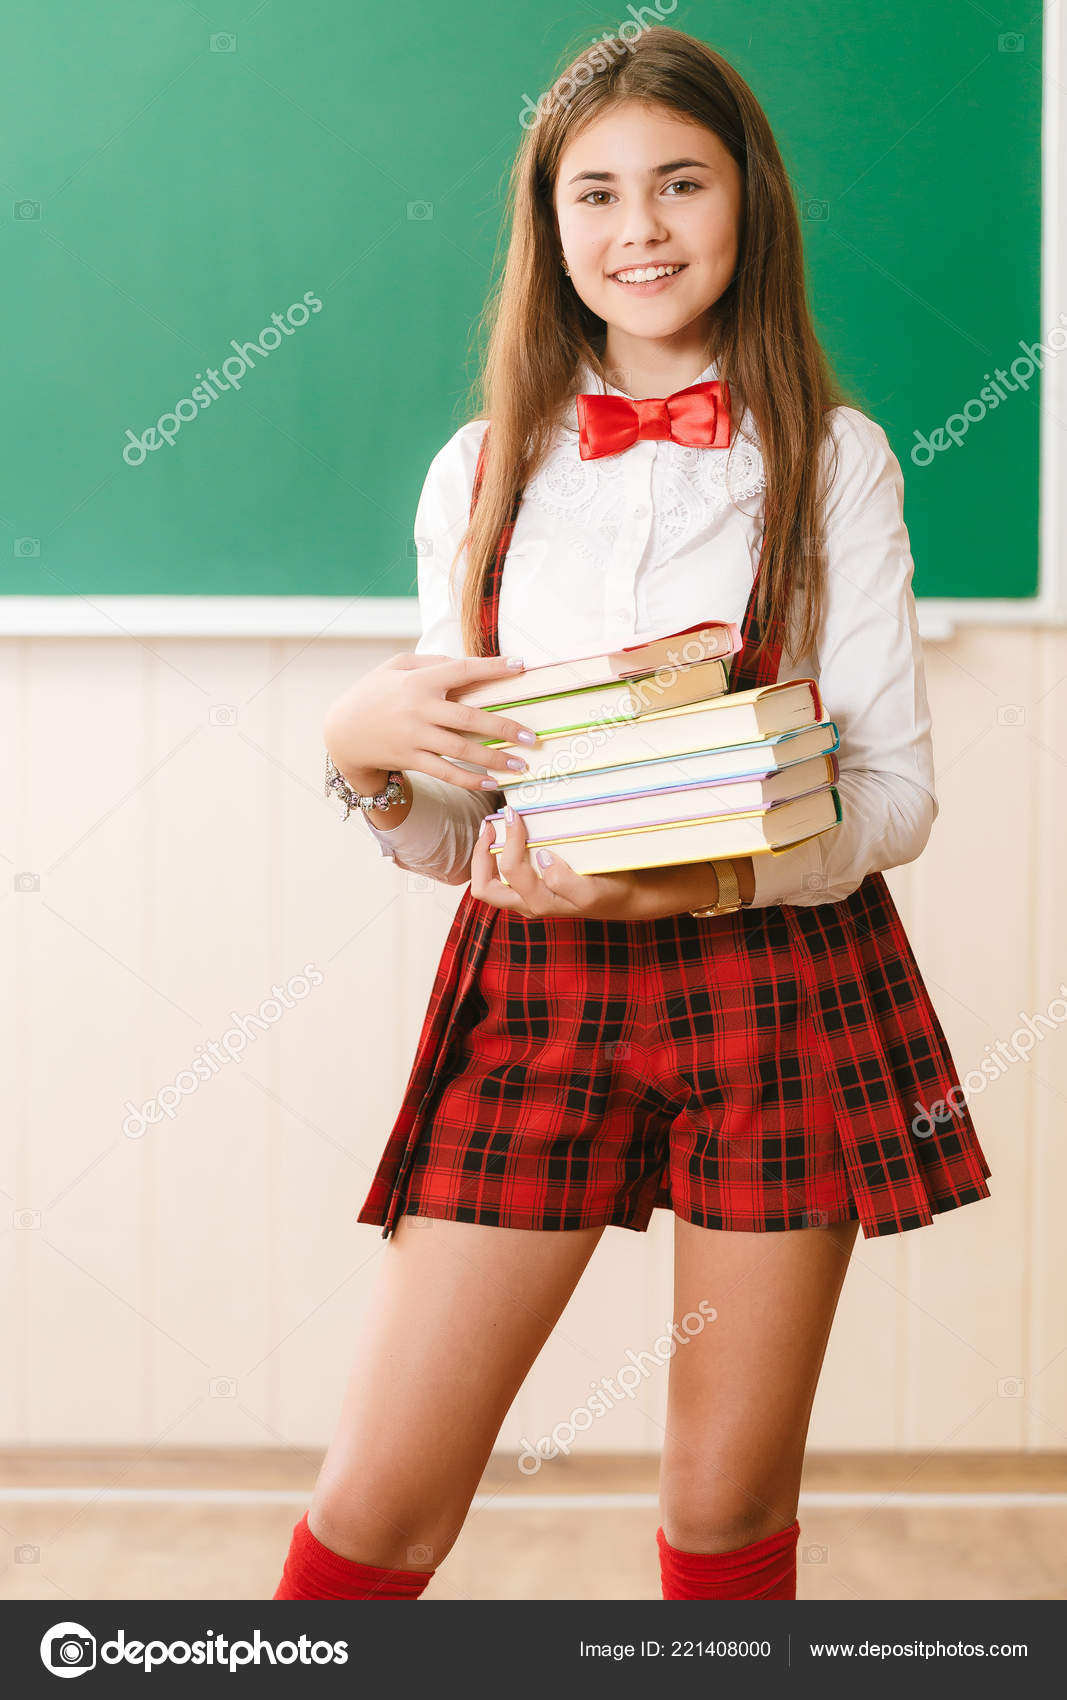 School Girl Photo